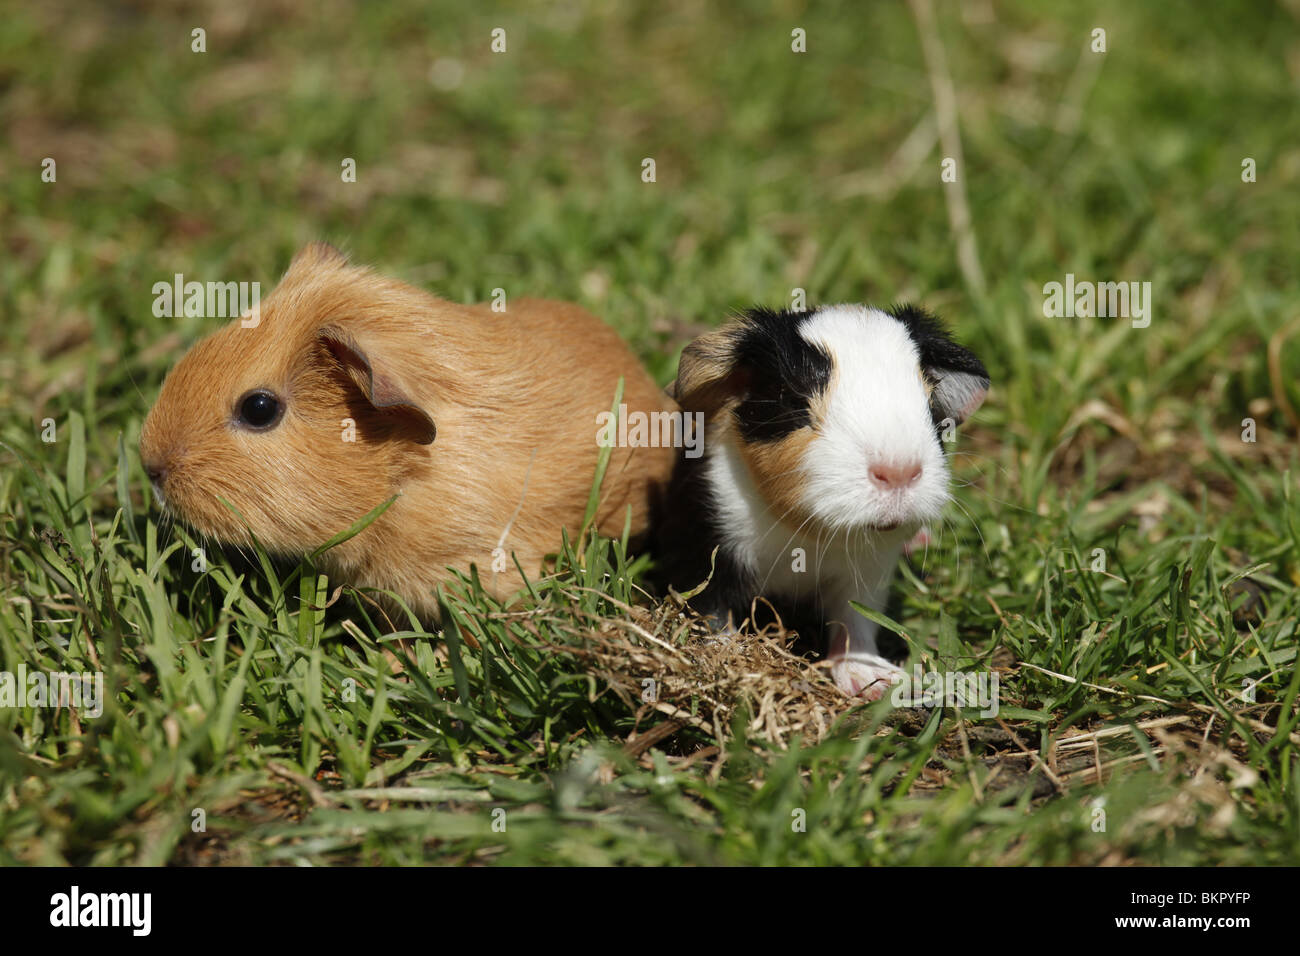 junge Meerschweine / young guinea pigs Stock Photo